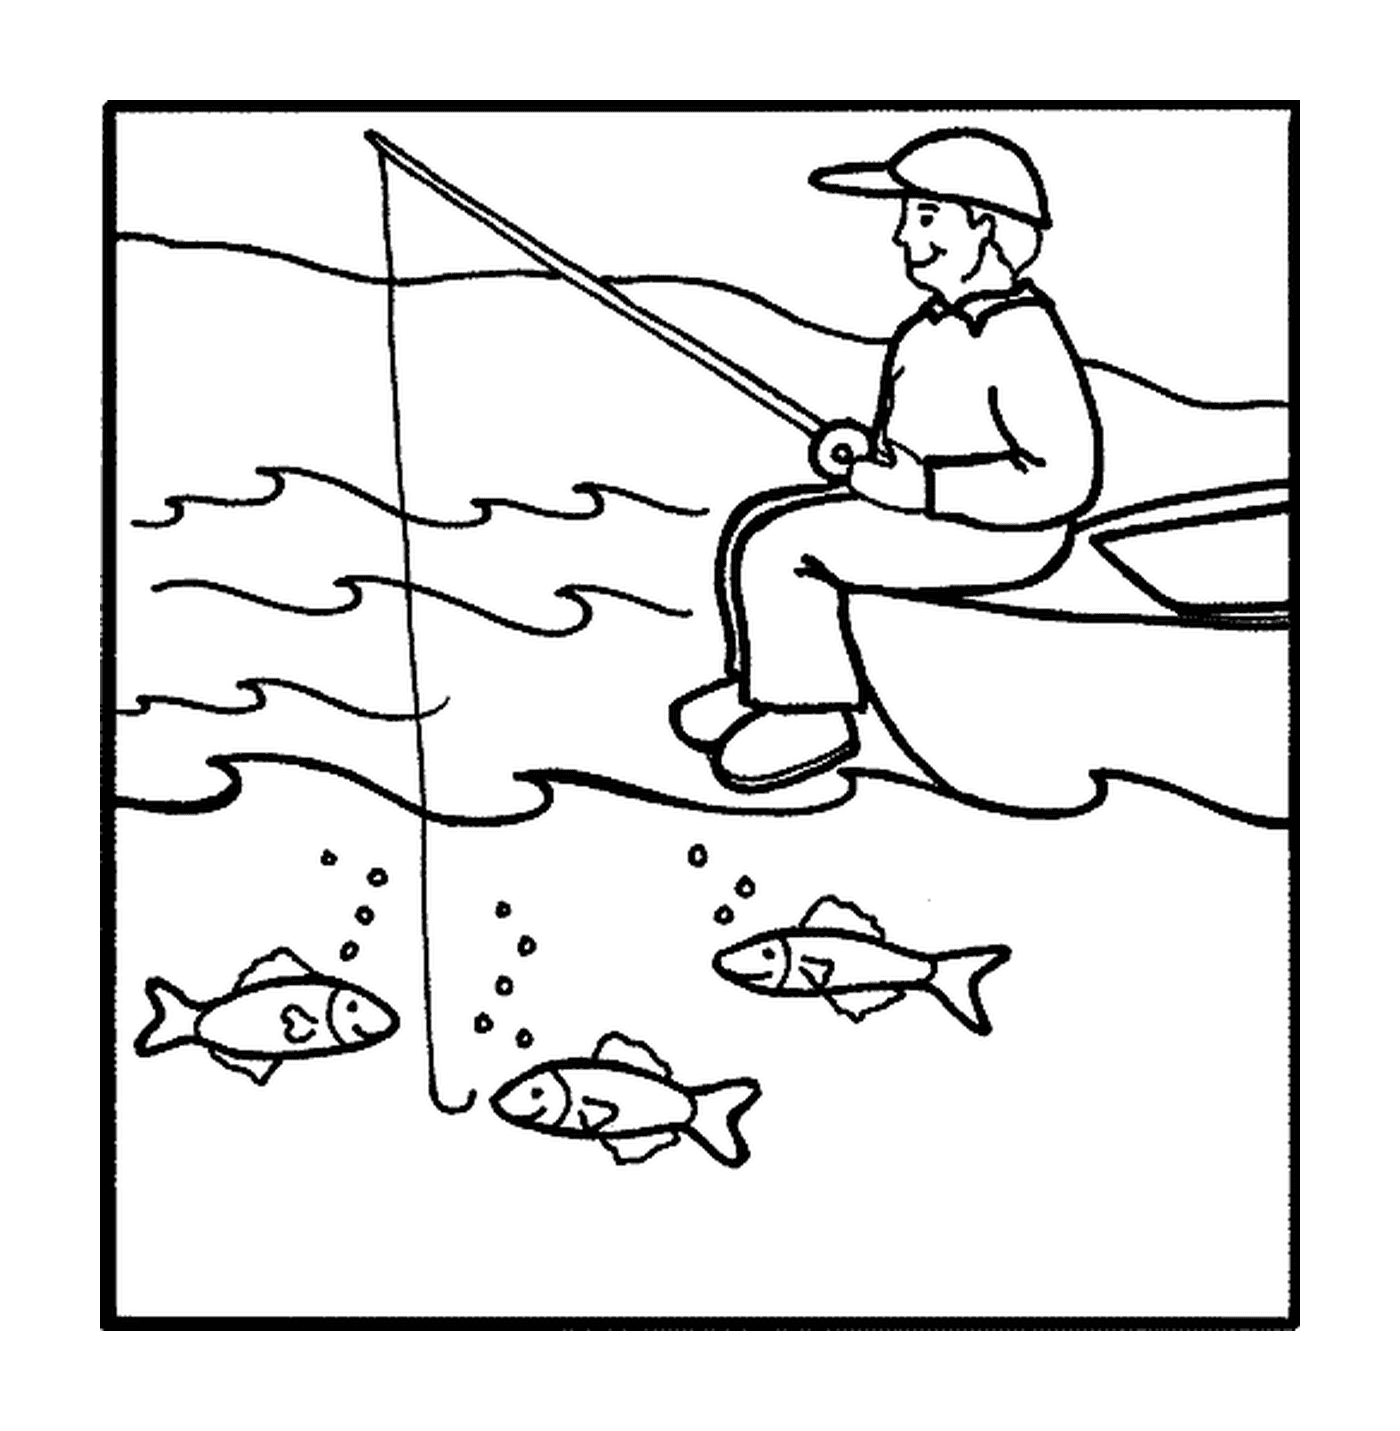  Mensch fischen 